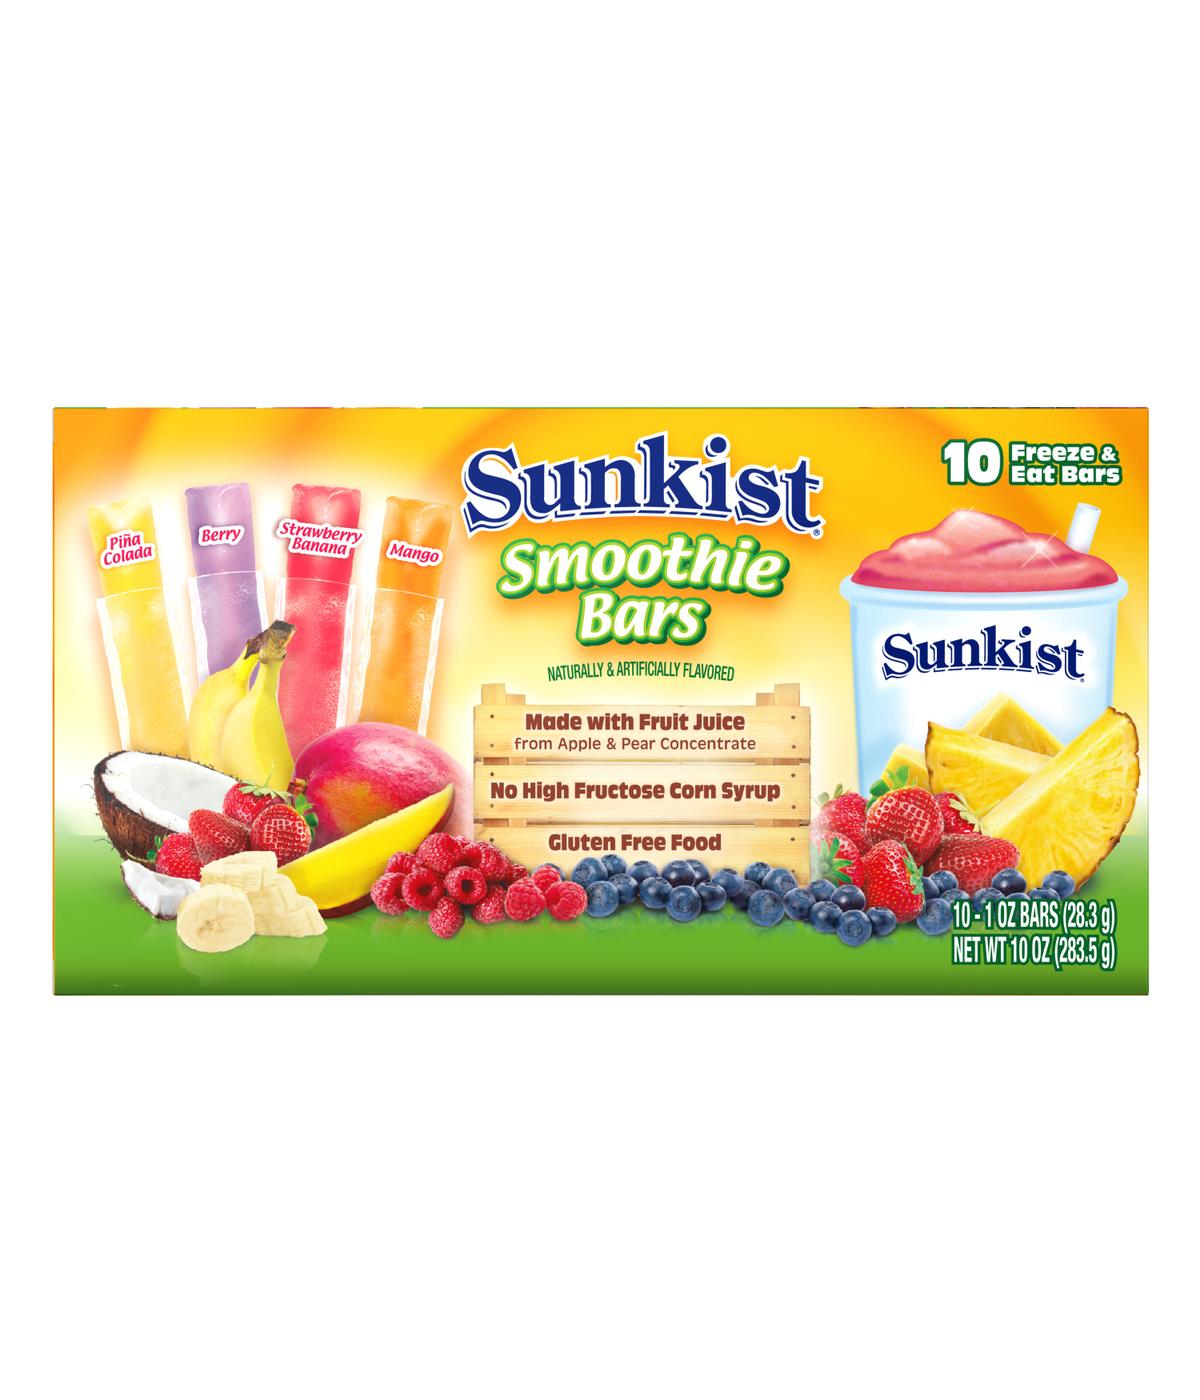 Sunkist Smoothie Freezer Bars; image 2 of 4